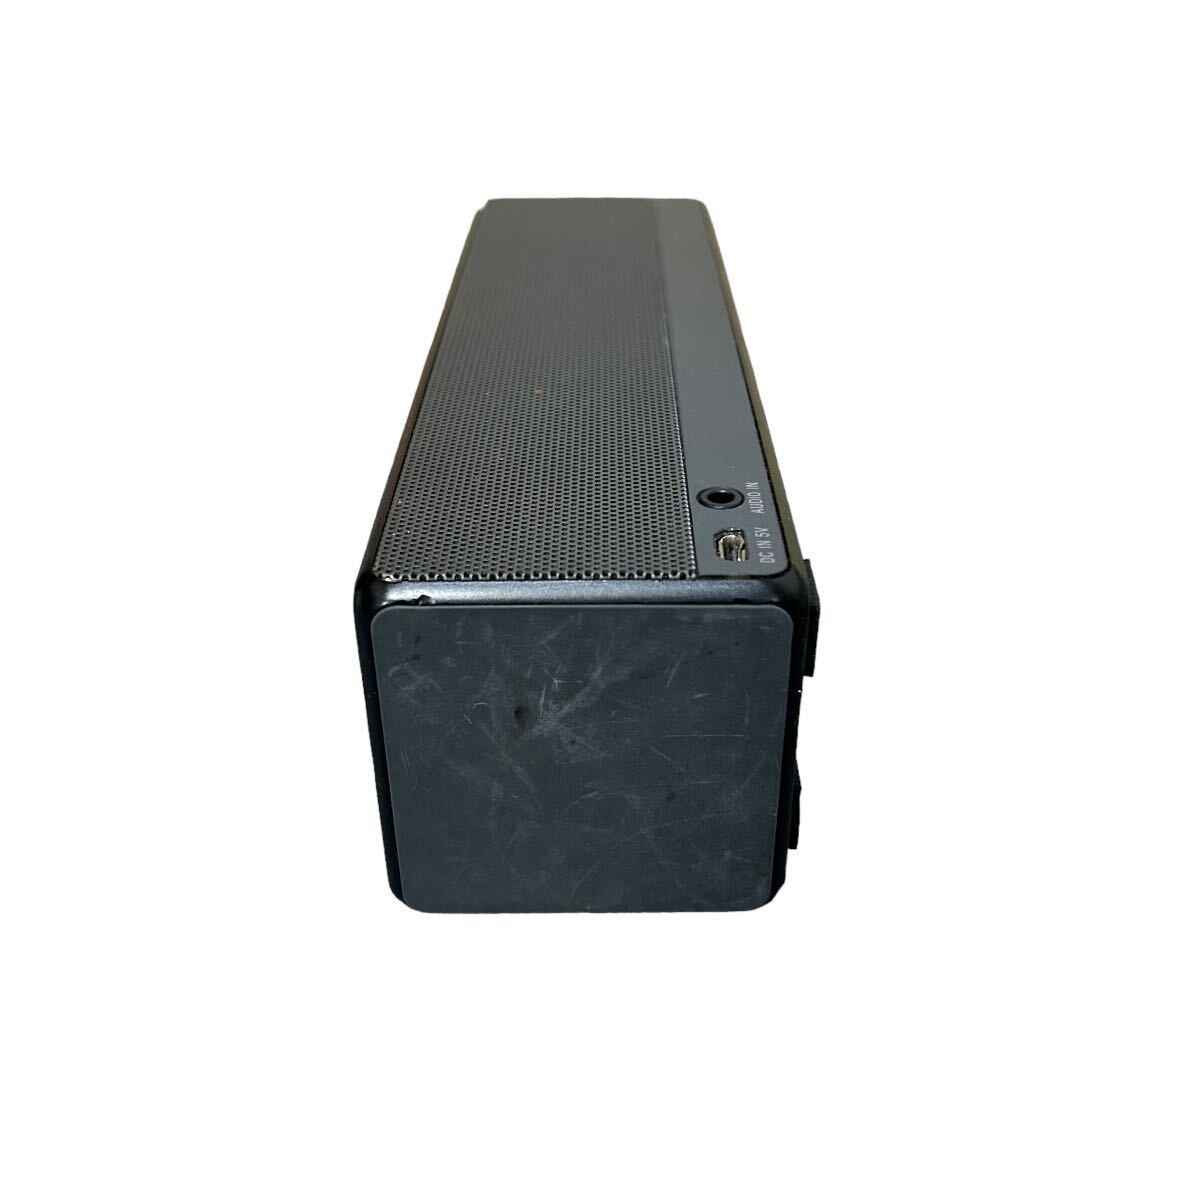 ソニー SRS-X33 SONY Bluetooth ワイヤレスポータブルスピーカー パーソナルオーディオシステム ブラック 2015年製_画像4